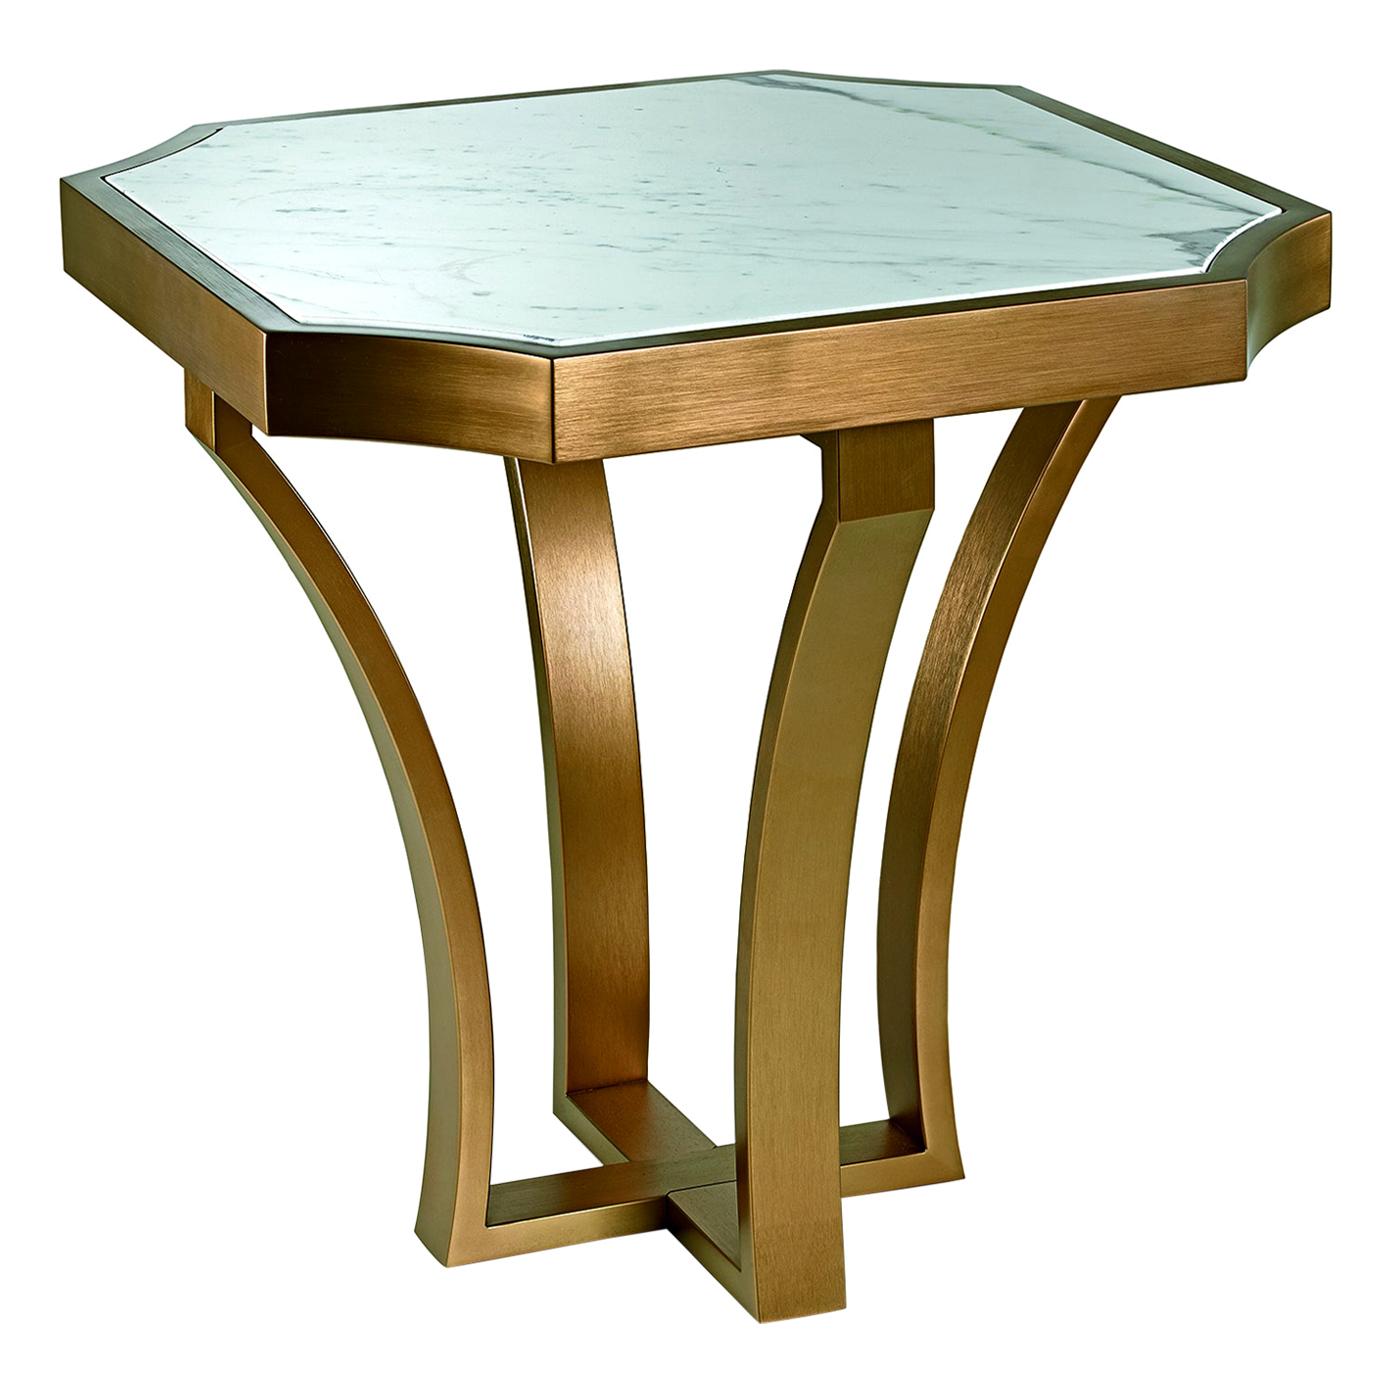 Table basse avec cadre en métal finition peinture vieillie et plateau en marbre doré Calacatta